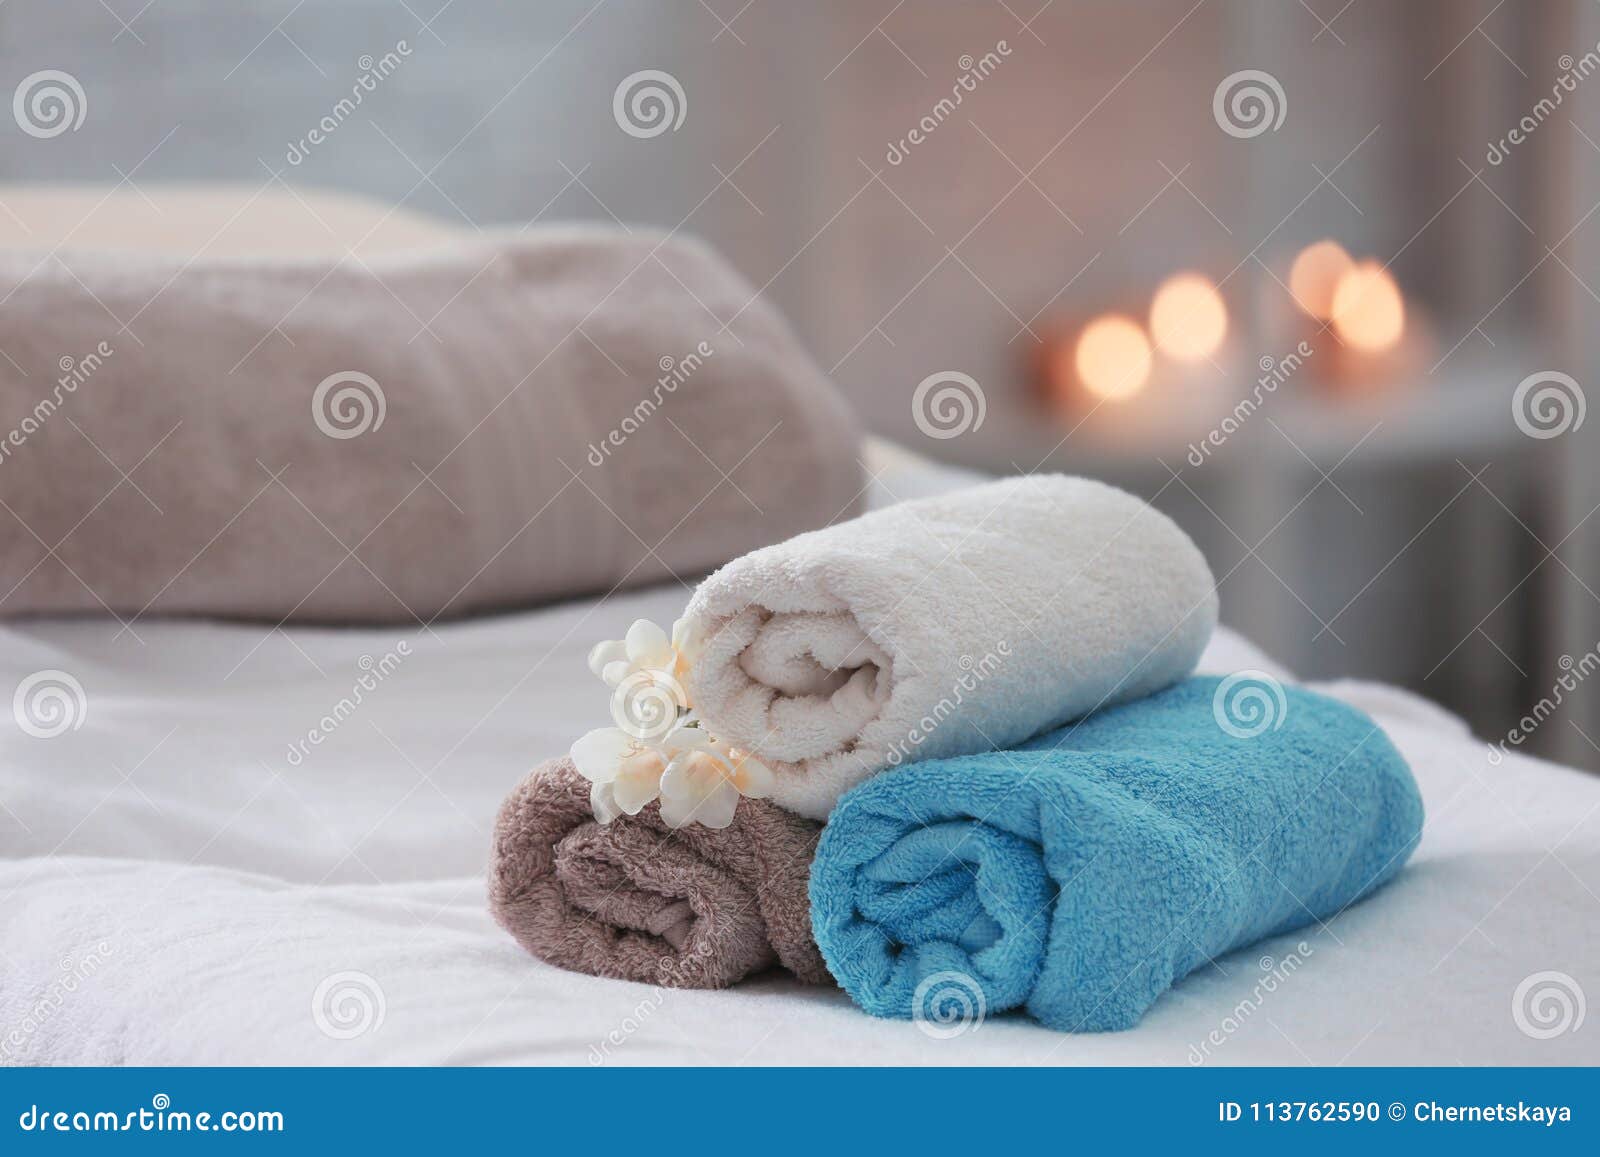 https://thumbs.dreamstime.com/z/towels-flowers-massage-table-towels-flowers-massage-table-spa-salon-113762590.jpg